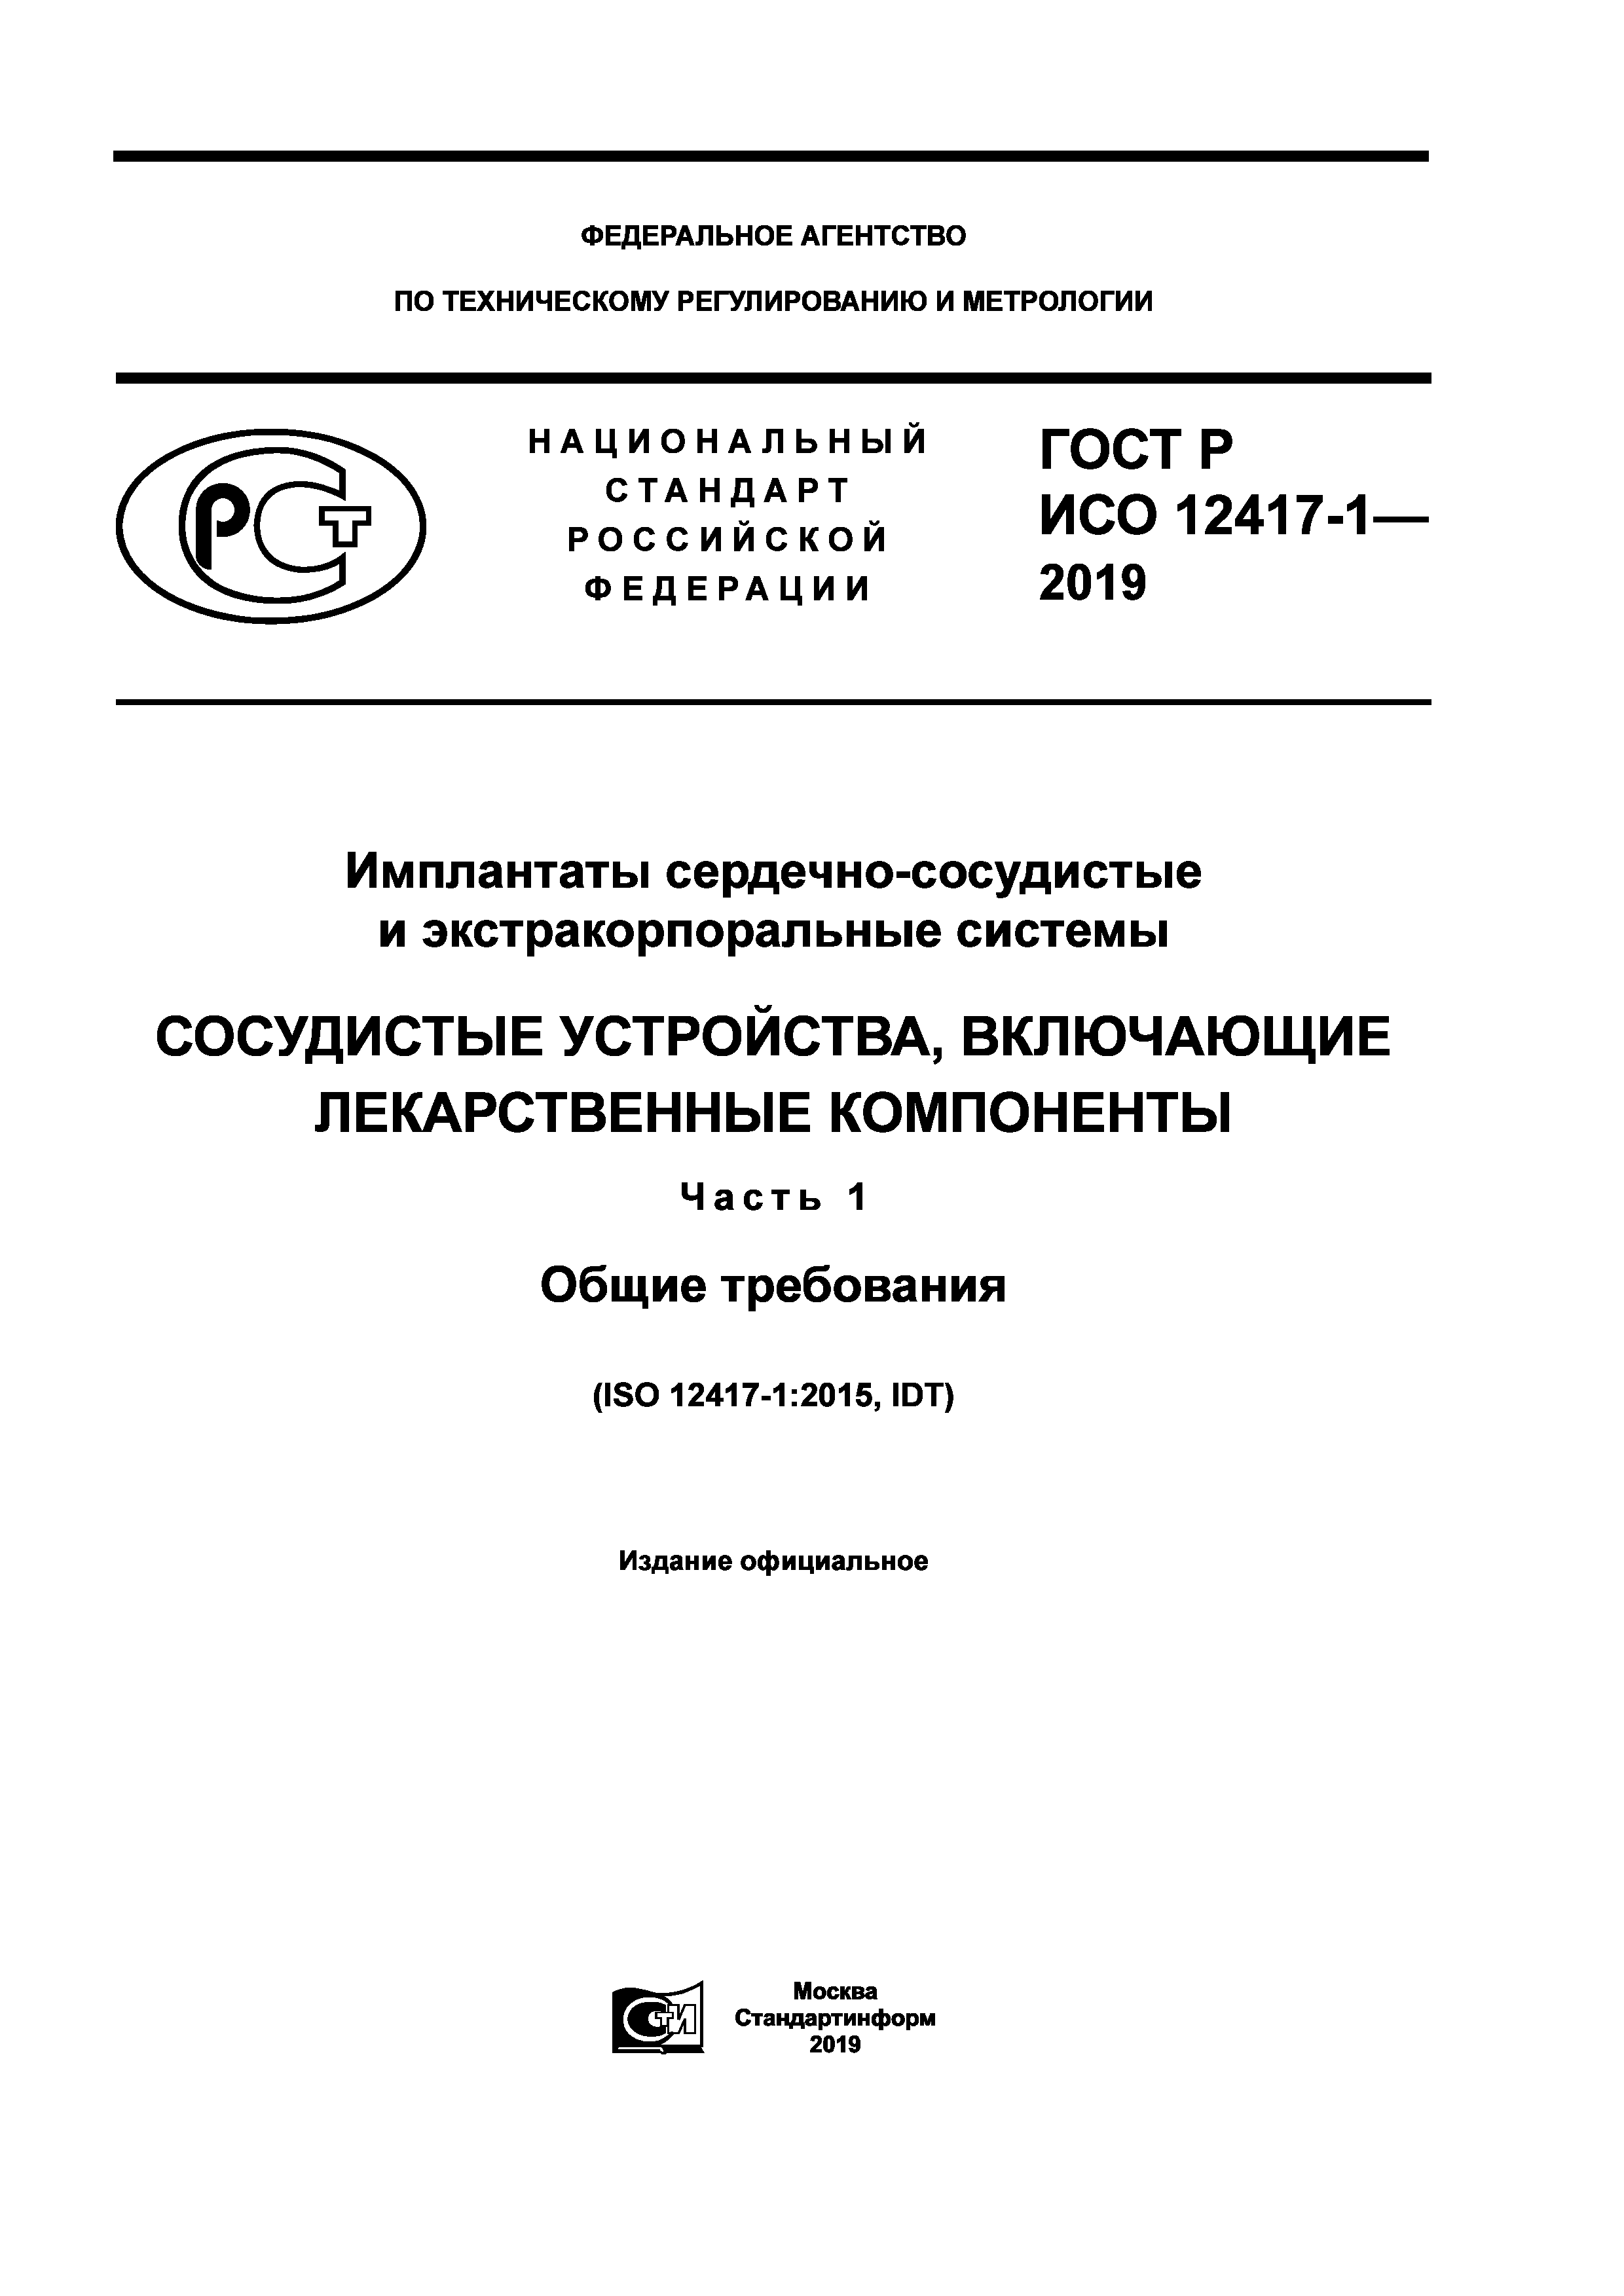 ГОСТ Р ИСО 12417-1-2019